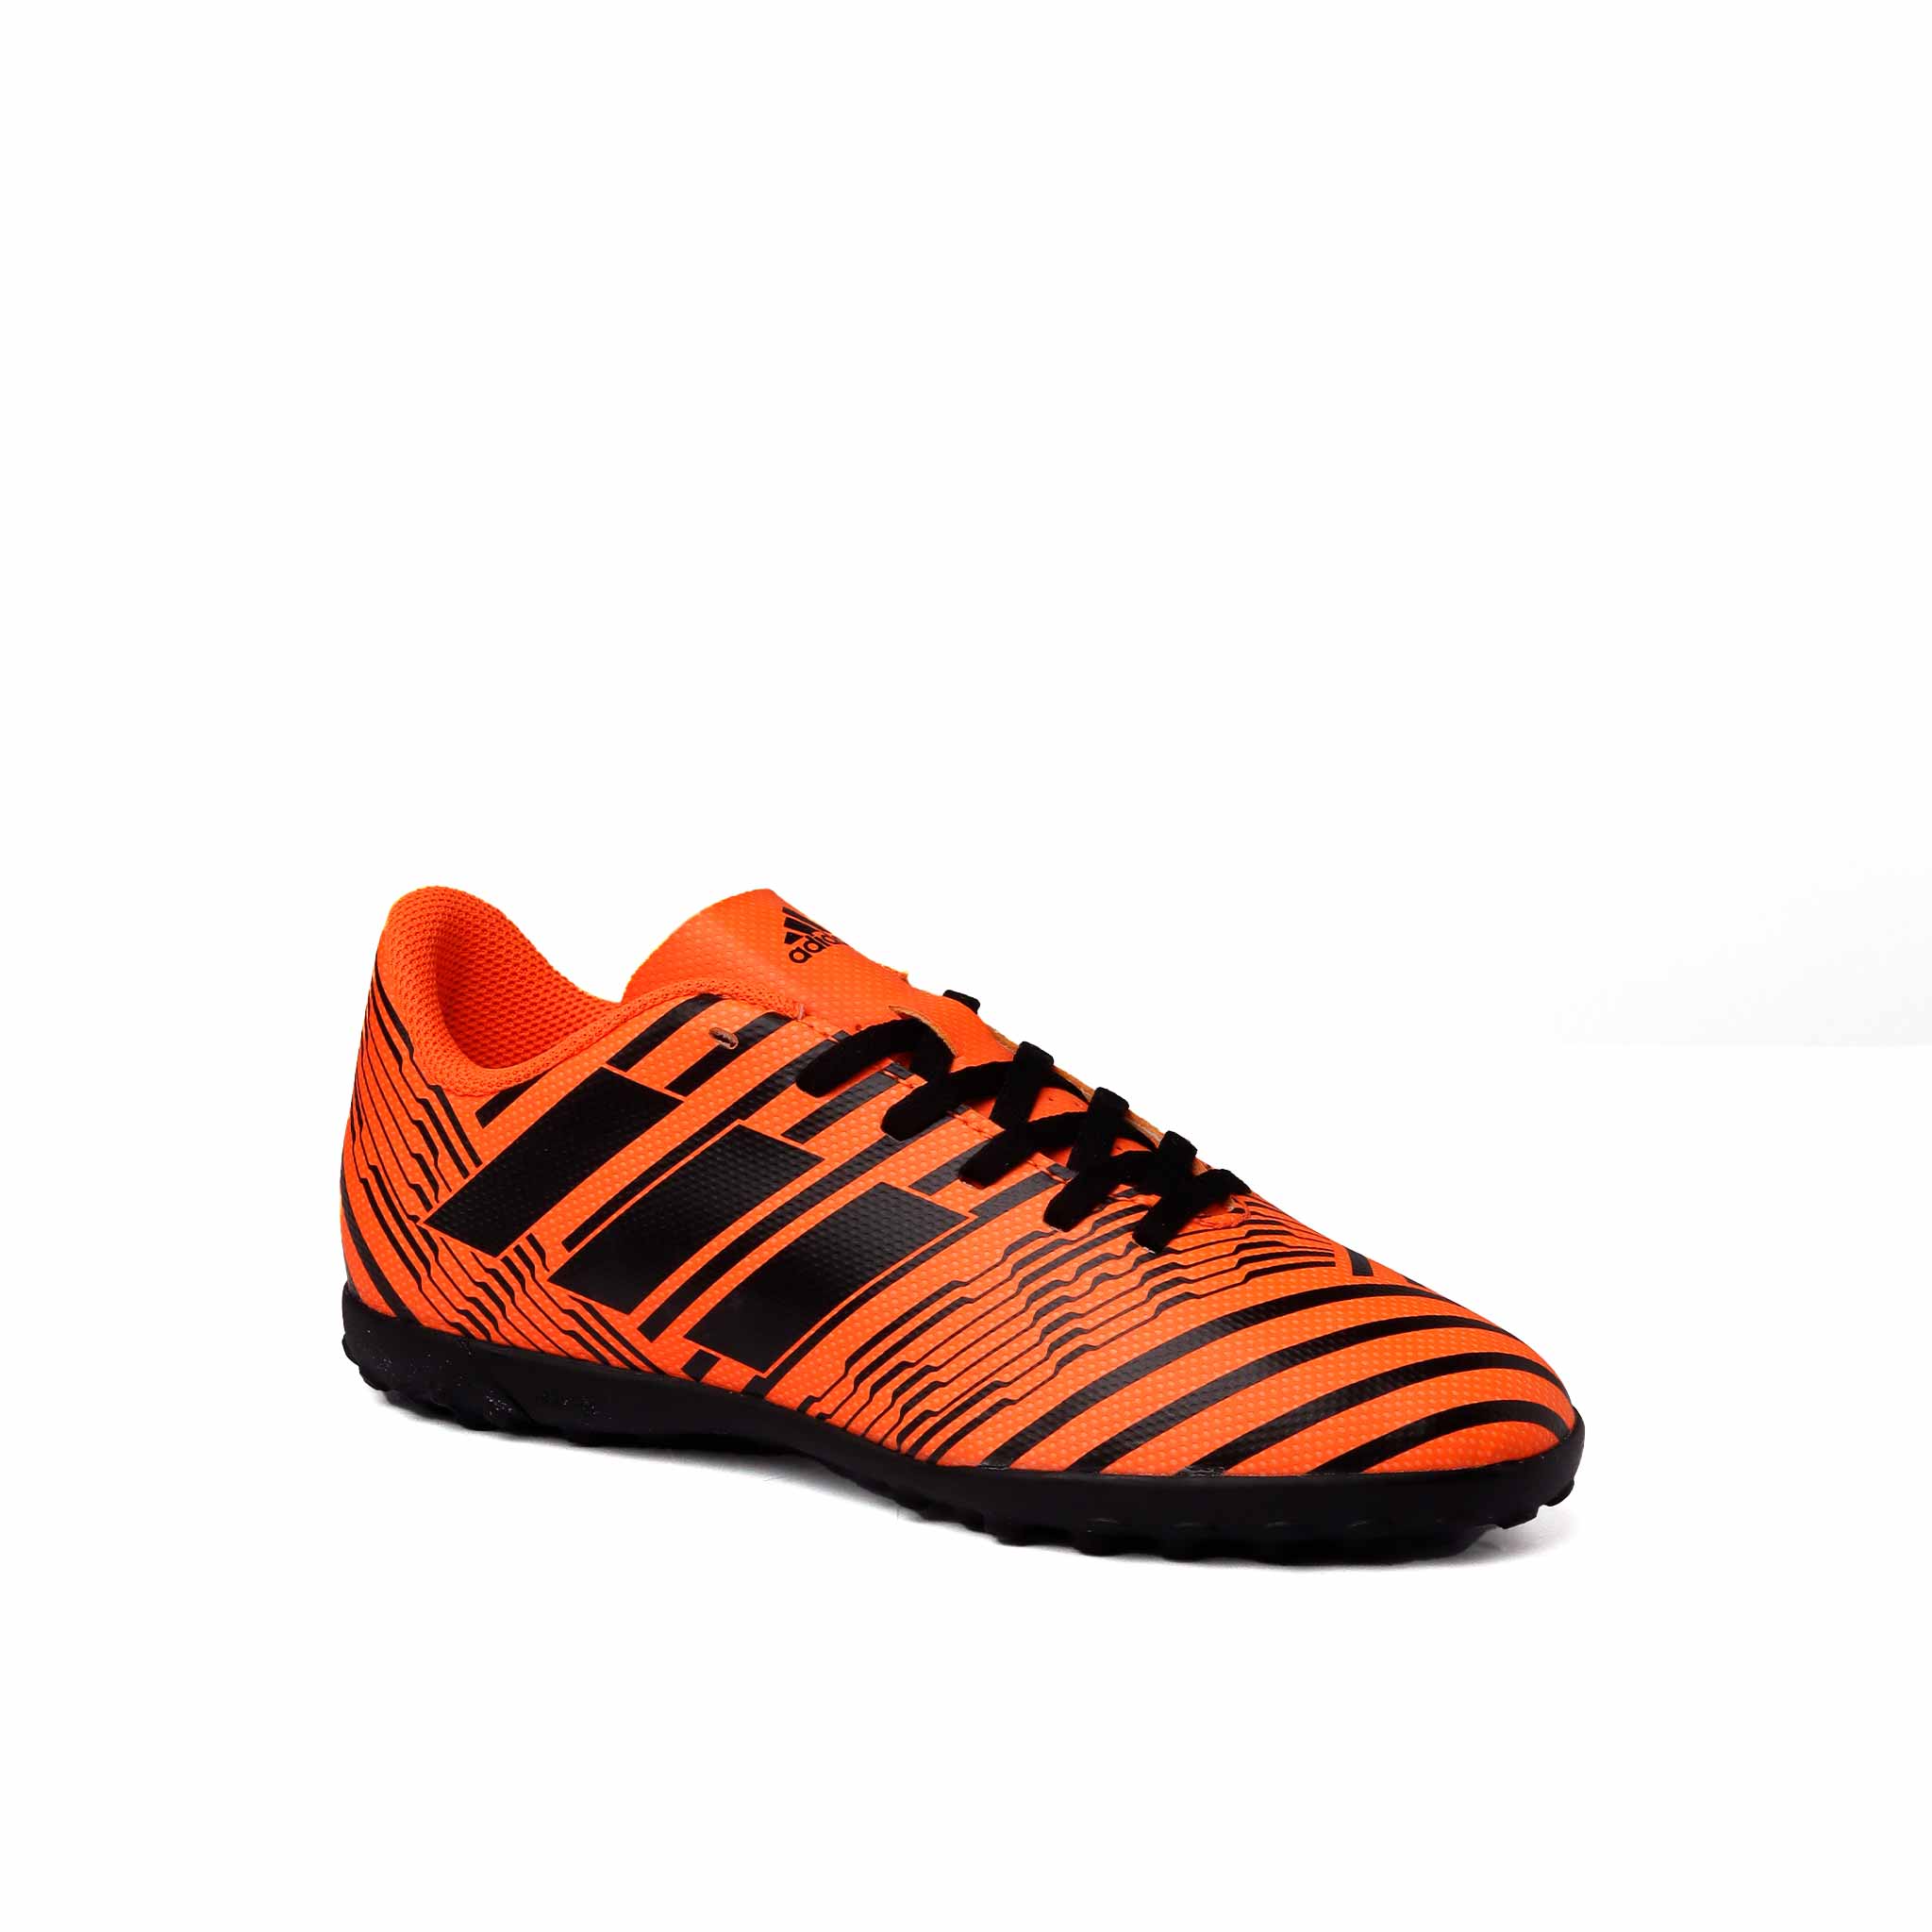 Adidas Nemeziz 17.4 Niño S82471 Futbol Naranja/Negro